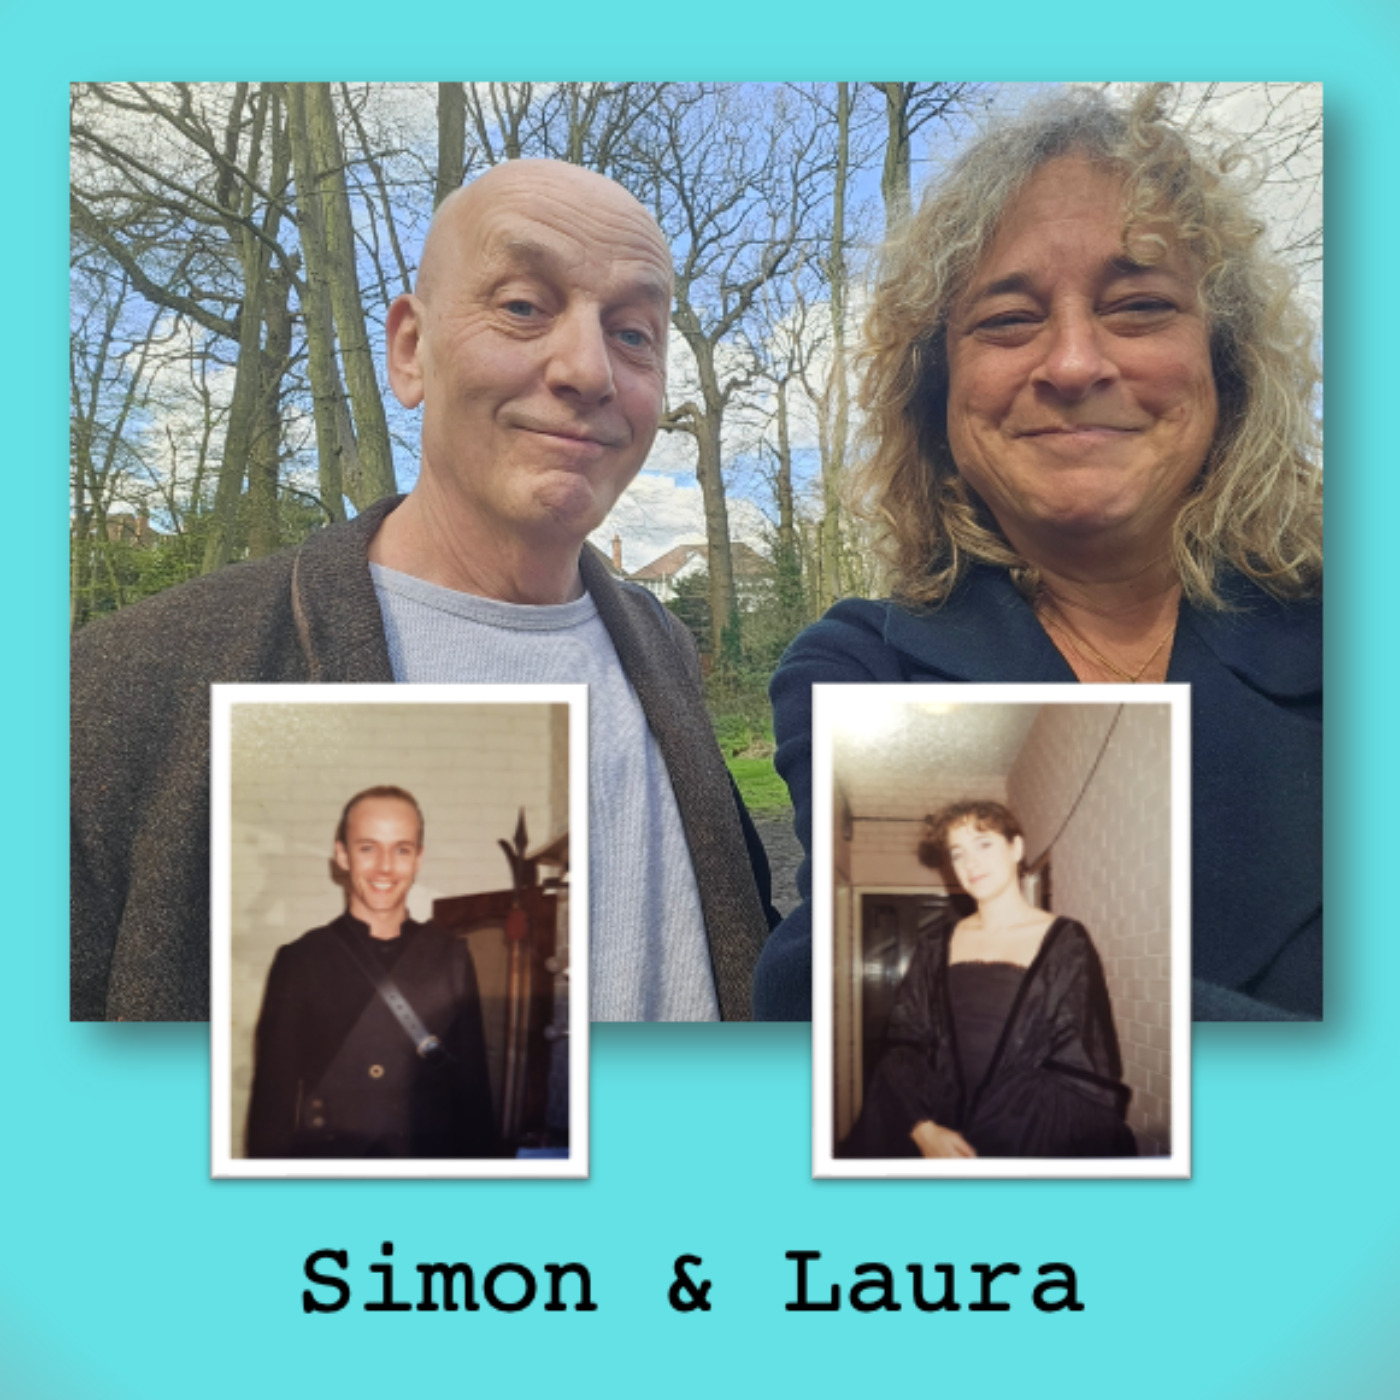 4. Laura and Simon